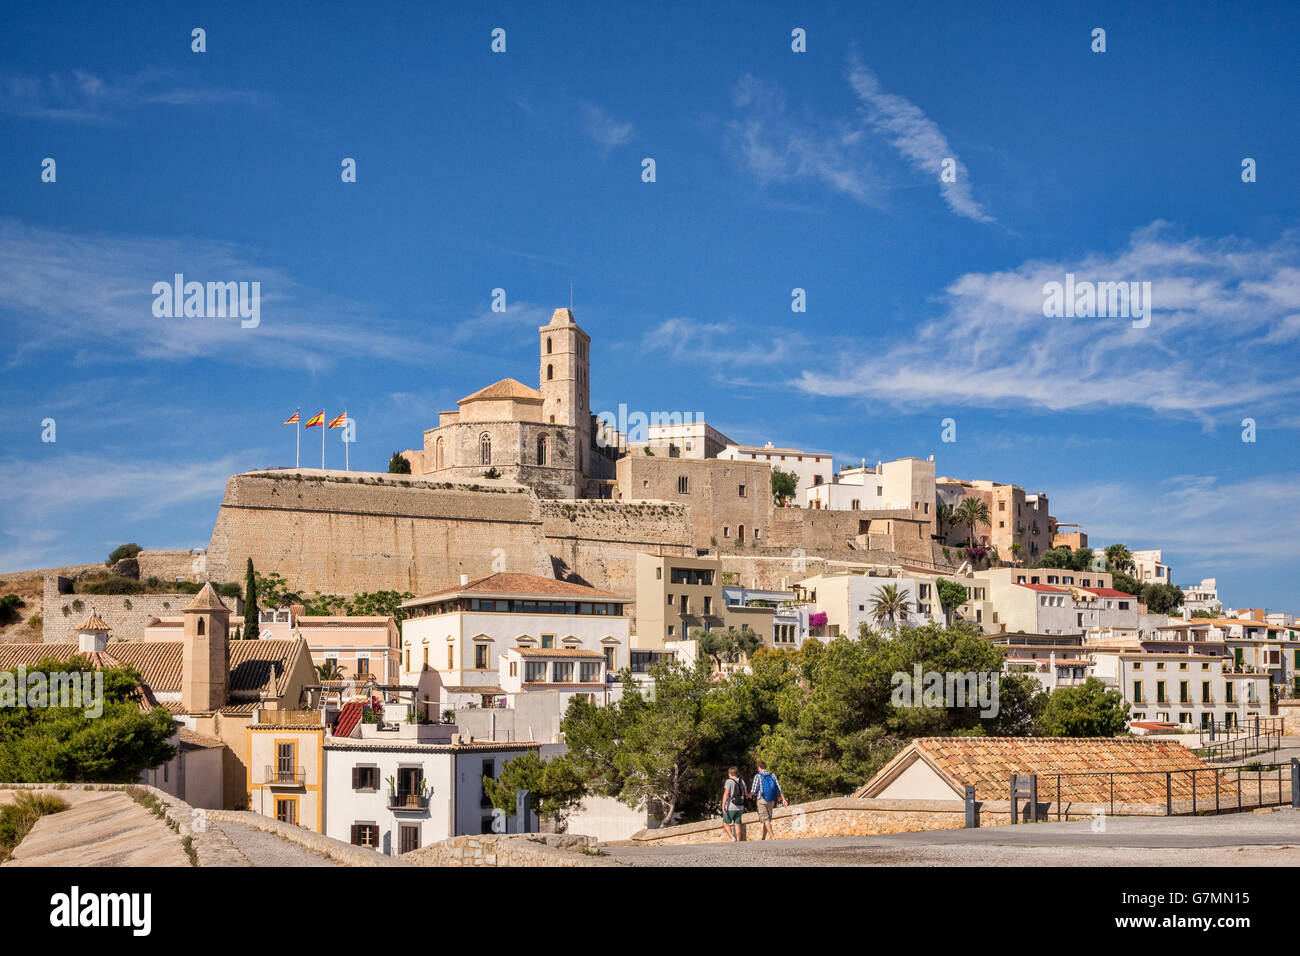 Le Dalt Vila, la partie ancienne de la ville d'Ibiza, dominée par la Cathédrale, et vu des murs de la ville. Banque D'Images